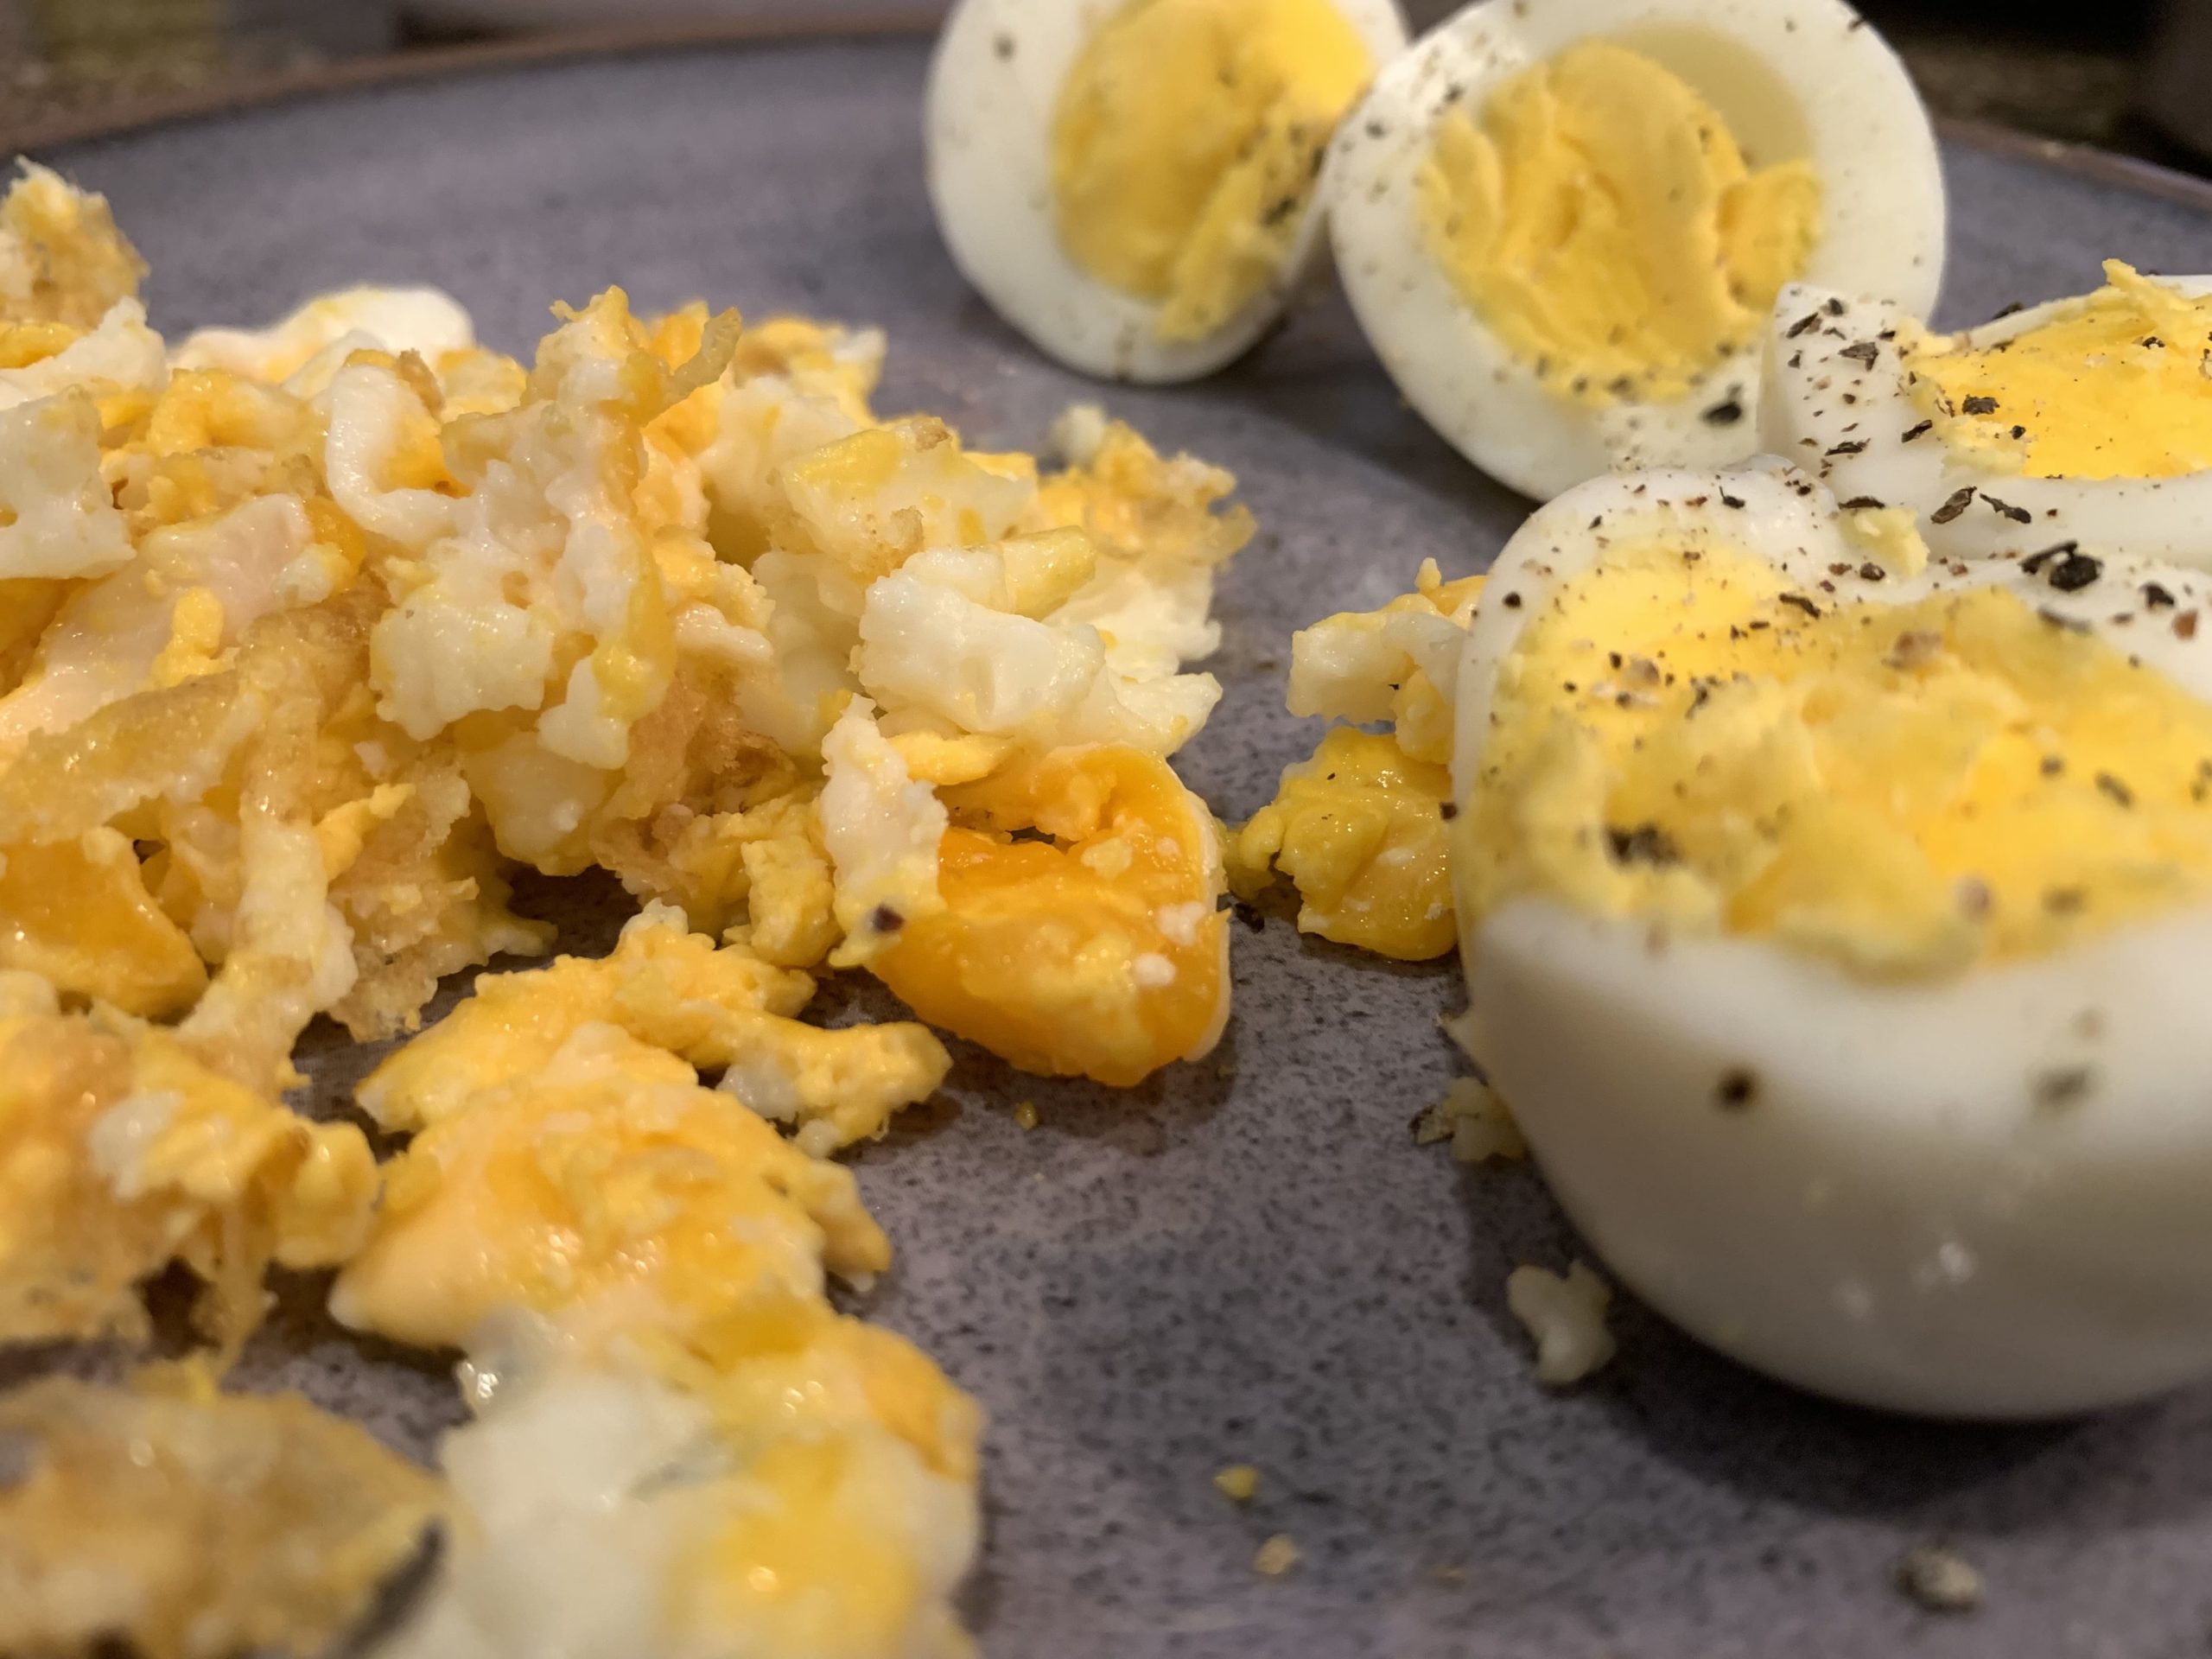 scrambled egg and boiled eggs